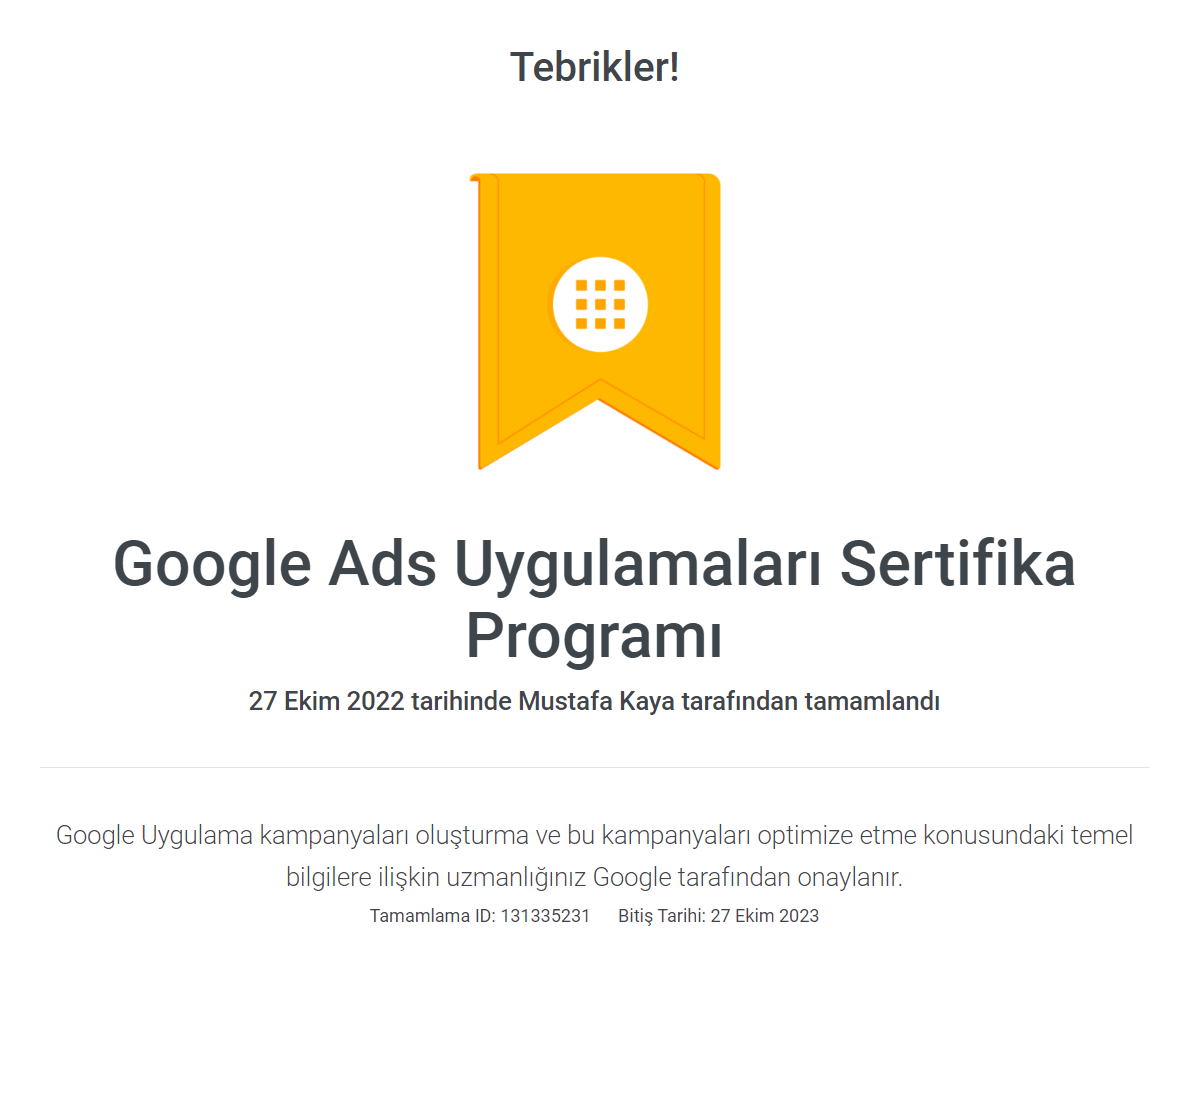 Google Ads Uygulamaları Sertifika Programı